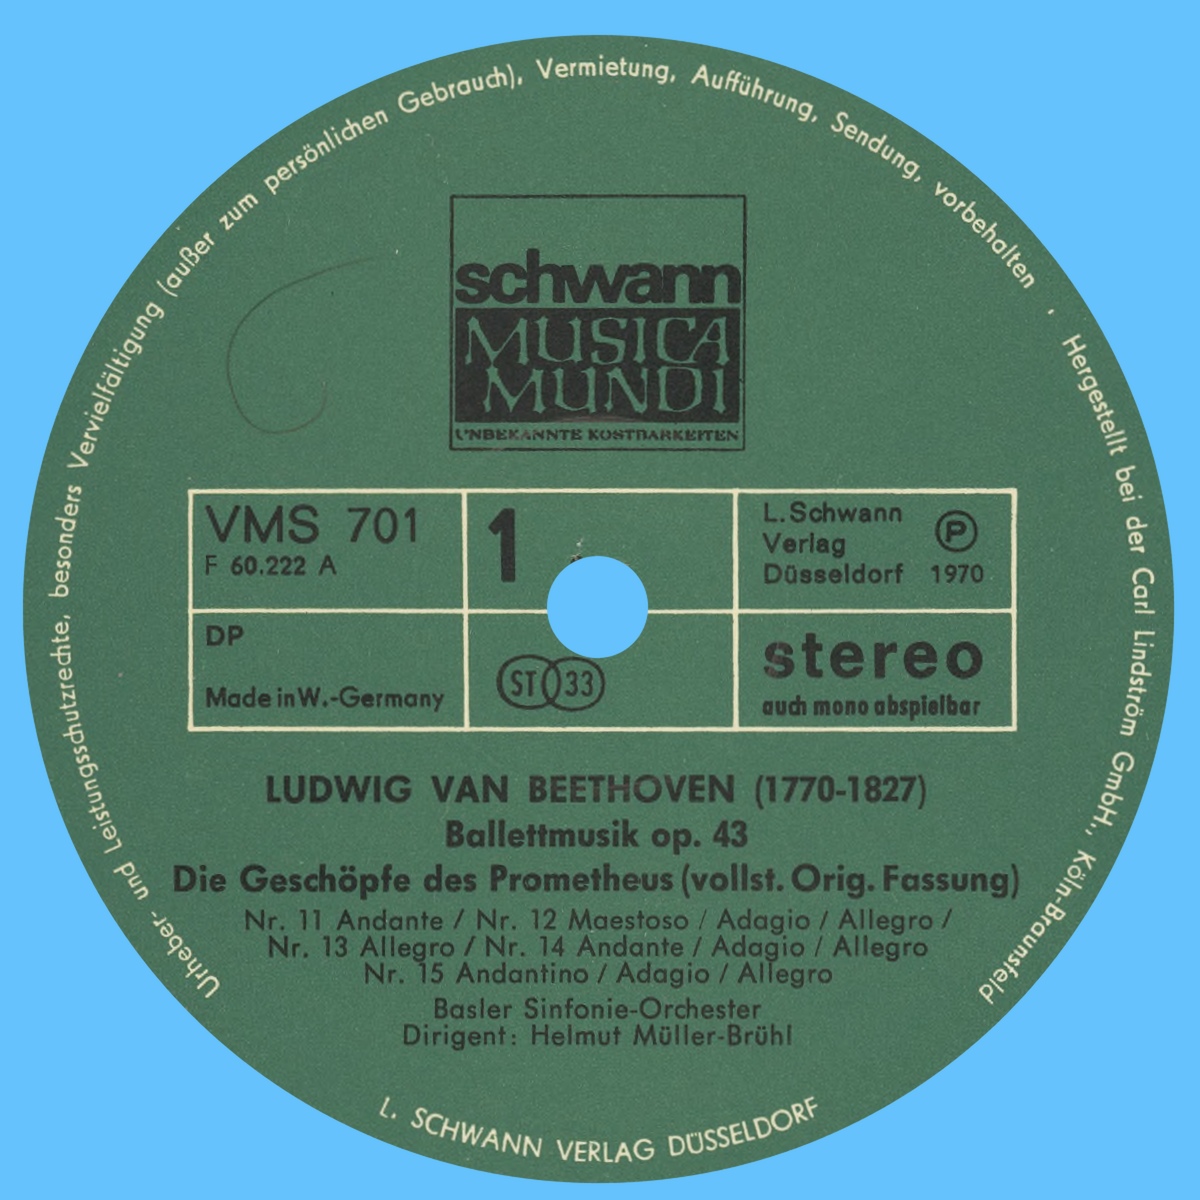 Étiquette recto du second disque de l'album Schwann Musica Mundi VMS 700/701